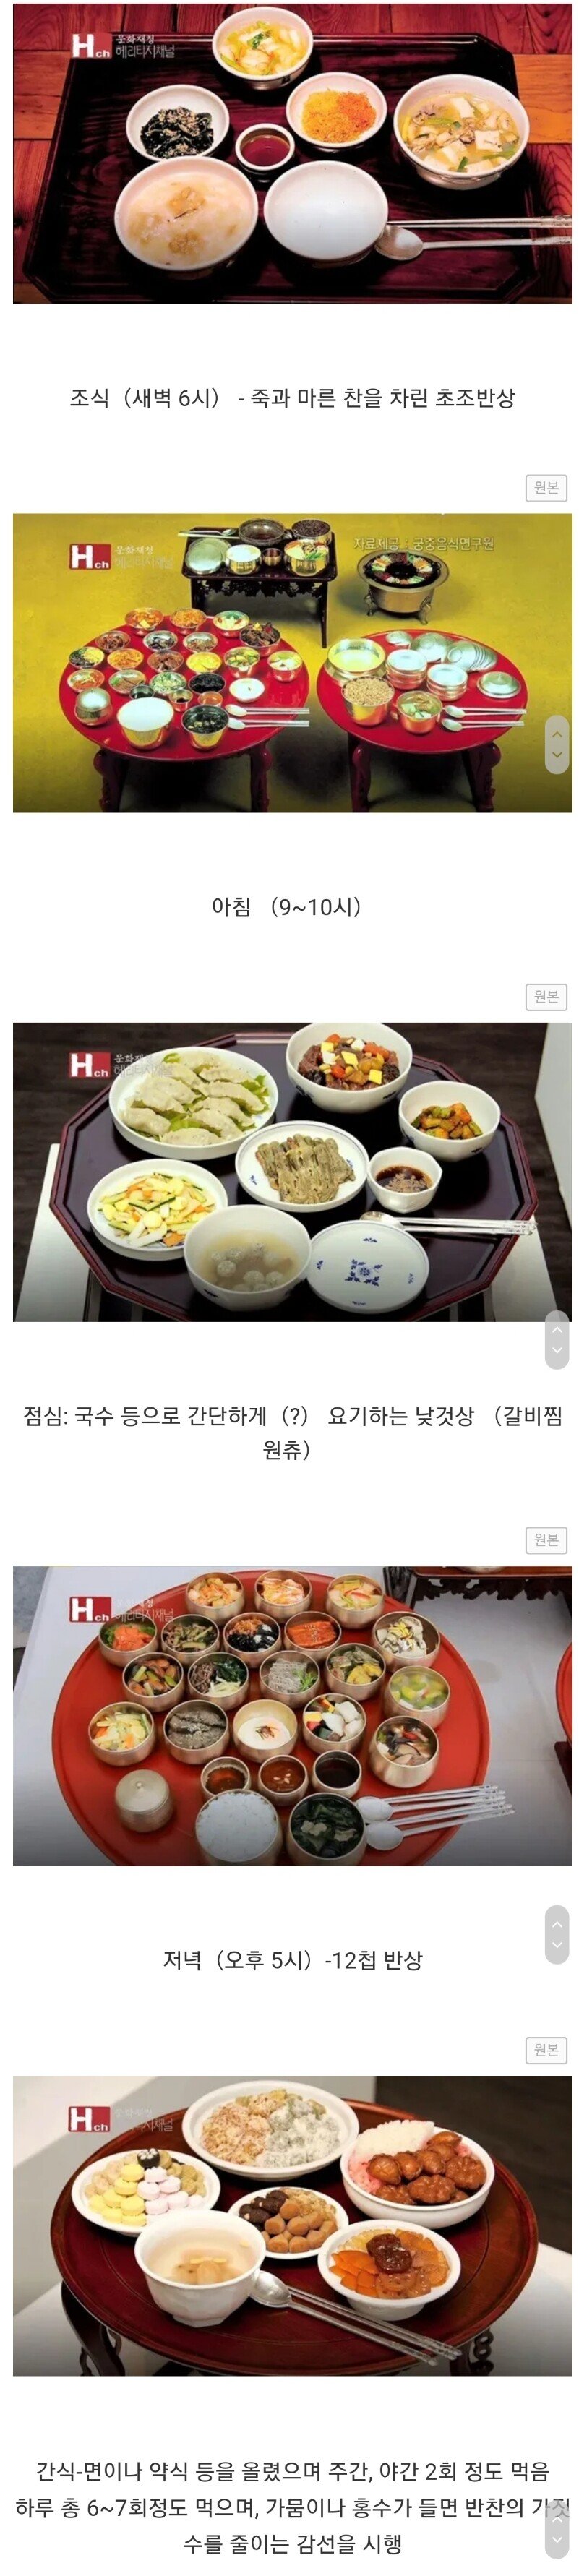 조선시대 왕들의 하루 식사.jpg